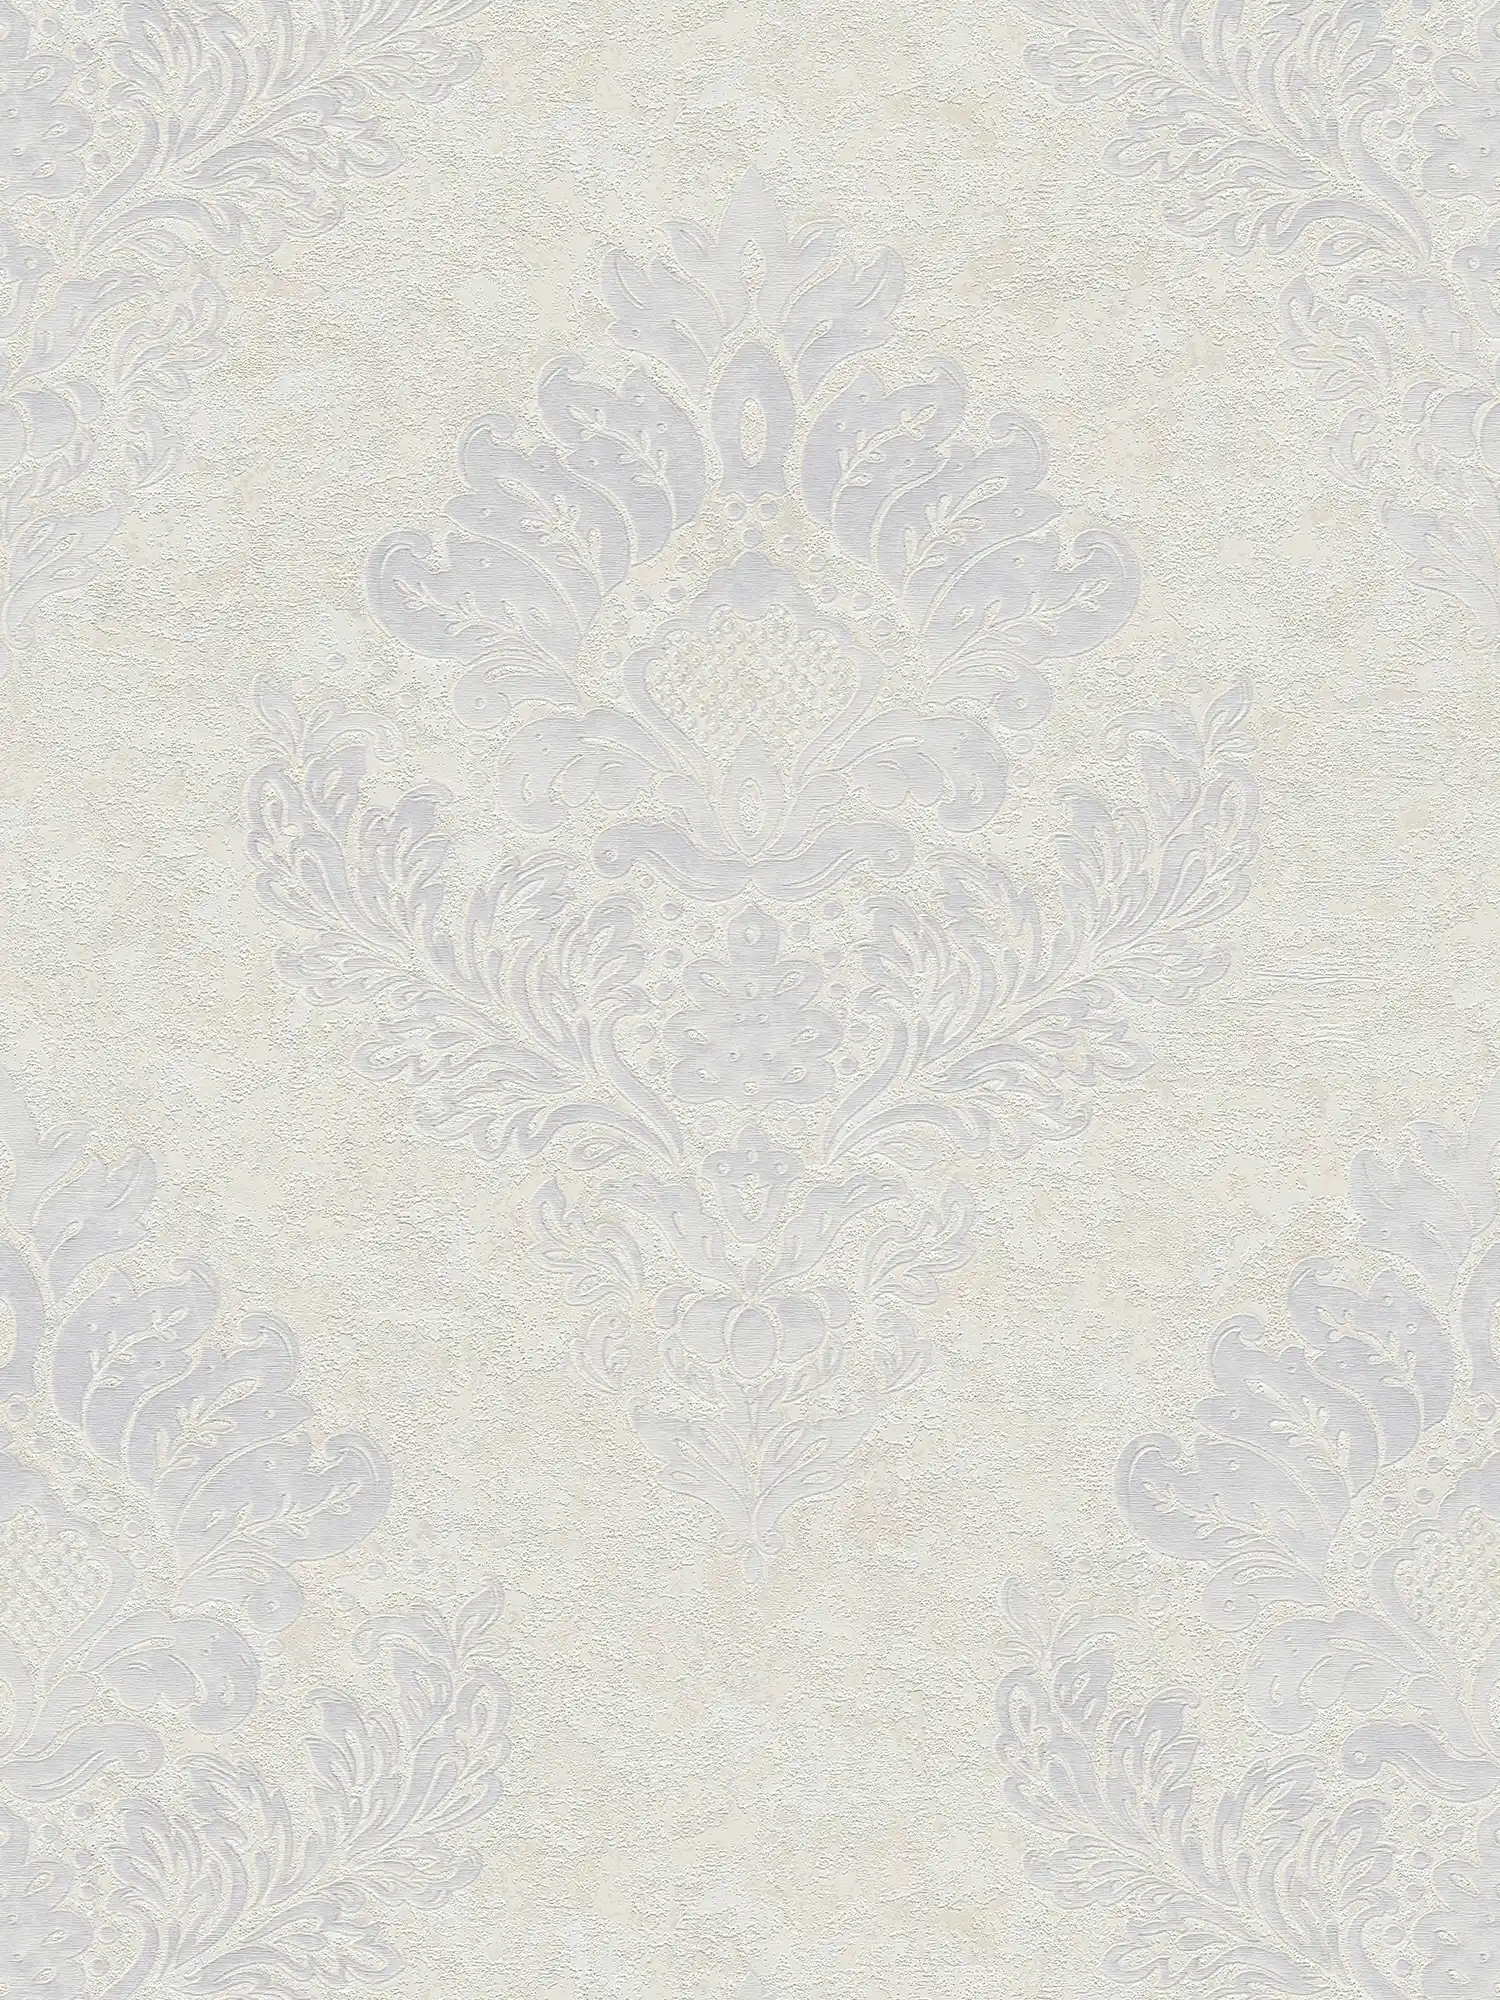 Papel pintado no tejido con adornos florales y brillo metálico - beige, gris, blanco
